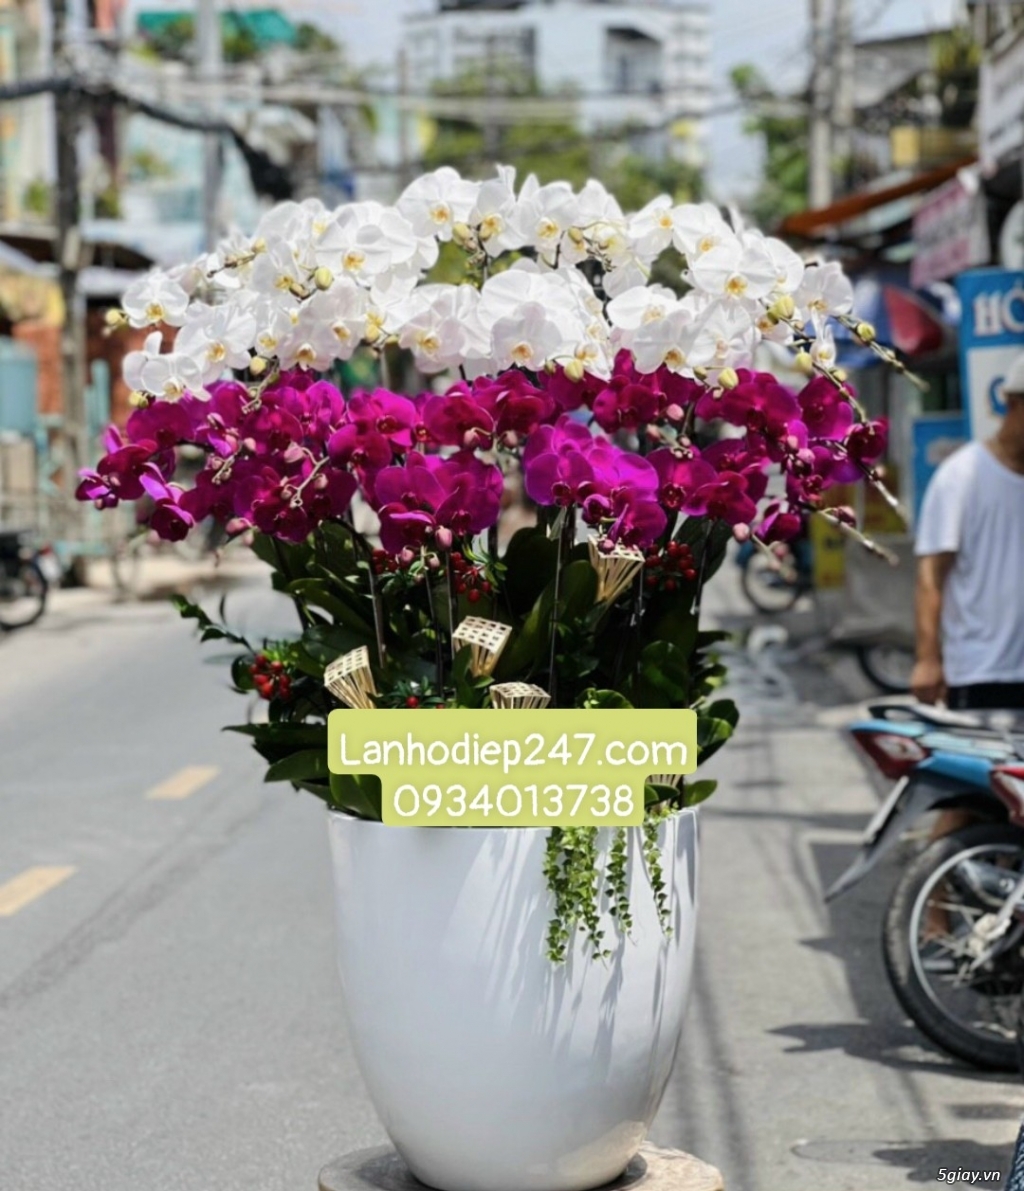 Shop hoa tươi Lan Hồ Điệp 247 tại Bà Rịa Vũng Tàu 0934013738 - 13